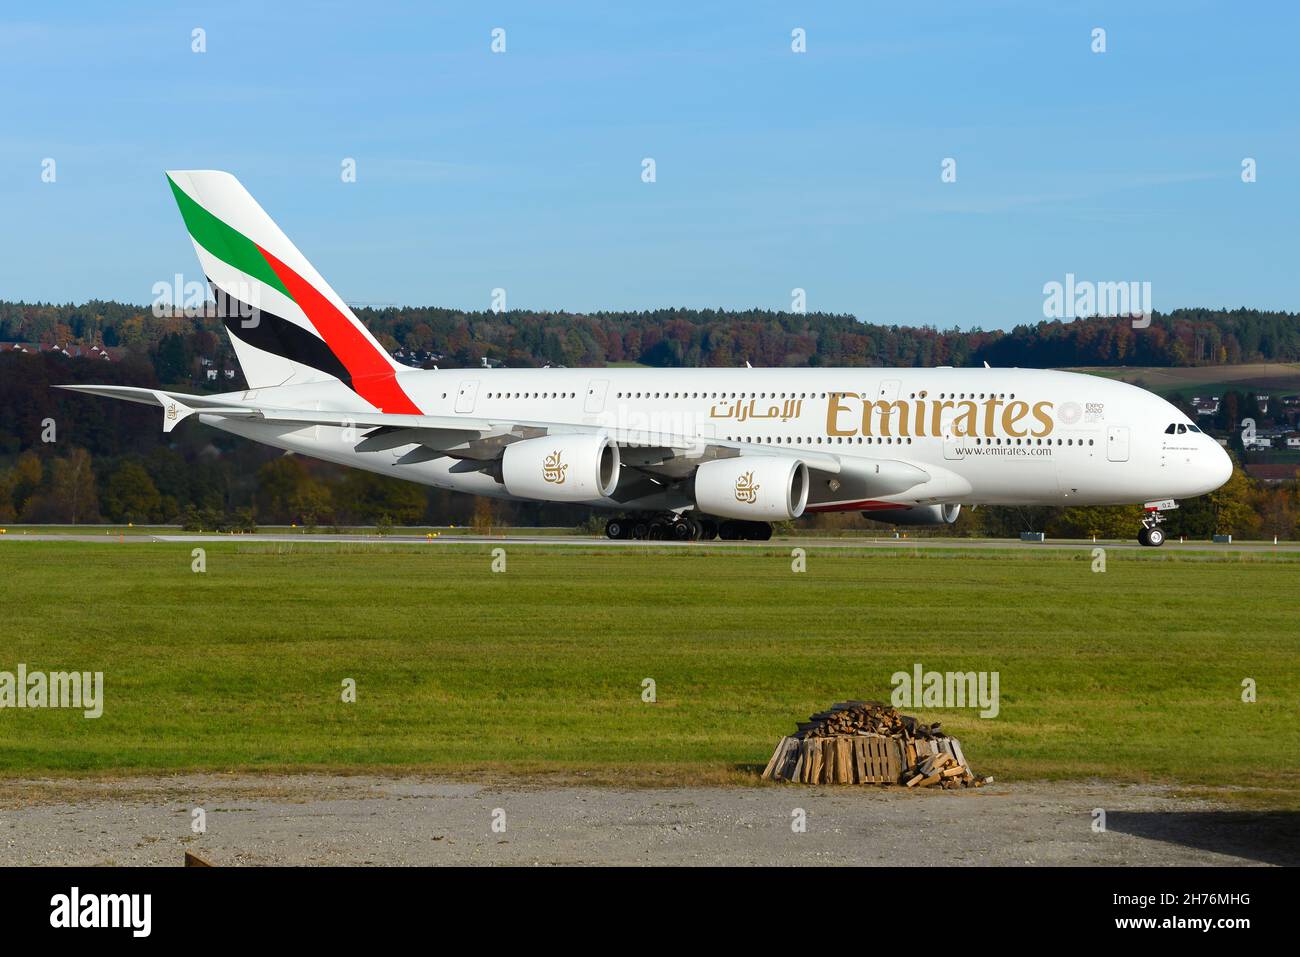 Airbus A380 d'Emirates Airlines à destination de Dubaï, Émirats arabes Unis.Avion d'Emirates Airline.Avion à impériale A380-800. Banque D'Images